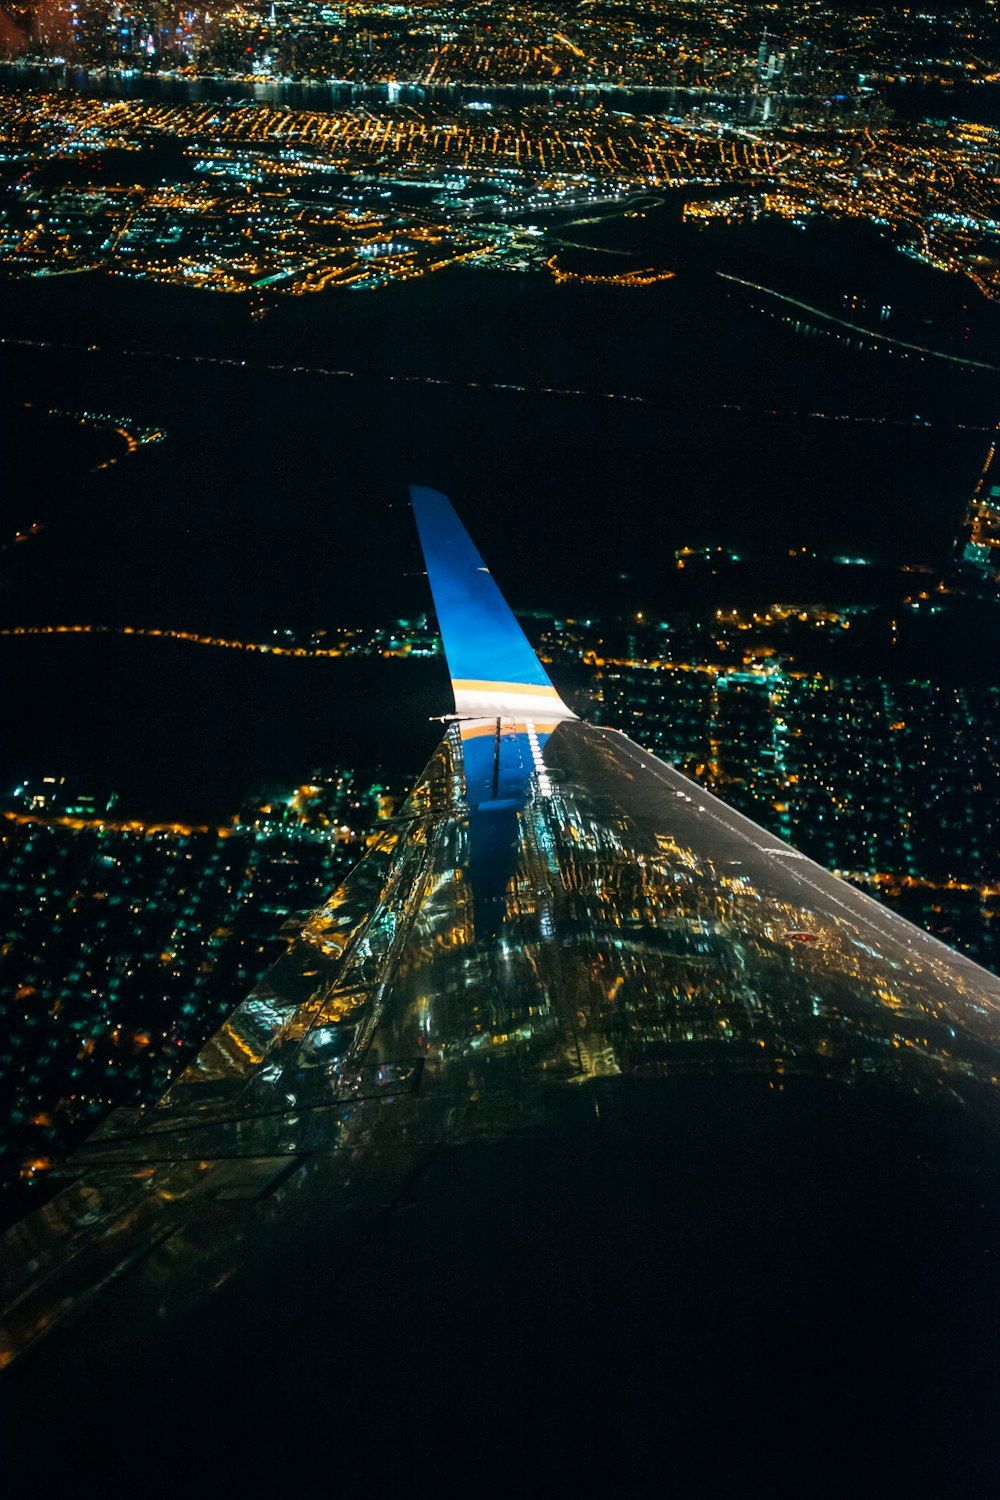 Un ala de avión volando sobre una ciudad por la noche